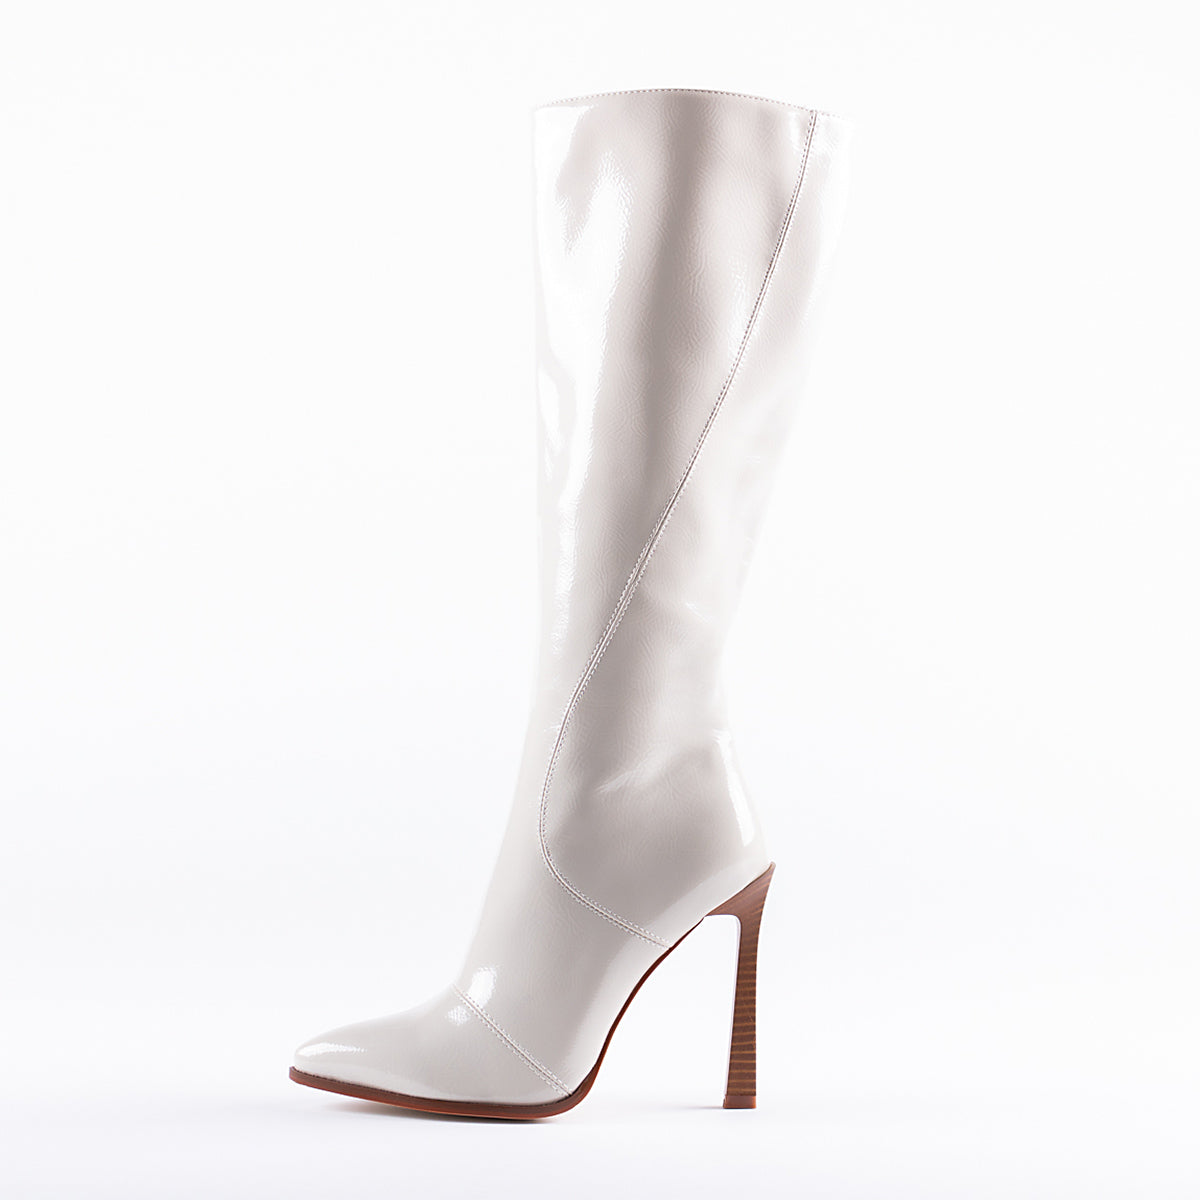 RAID Aria Long Stiletto Heel Boot in White